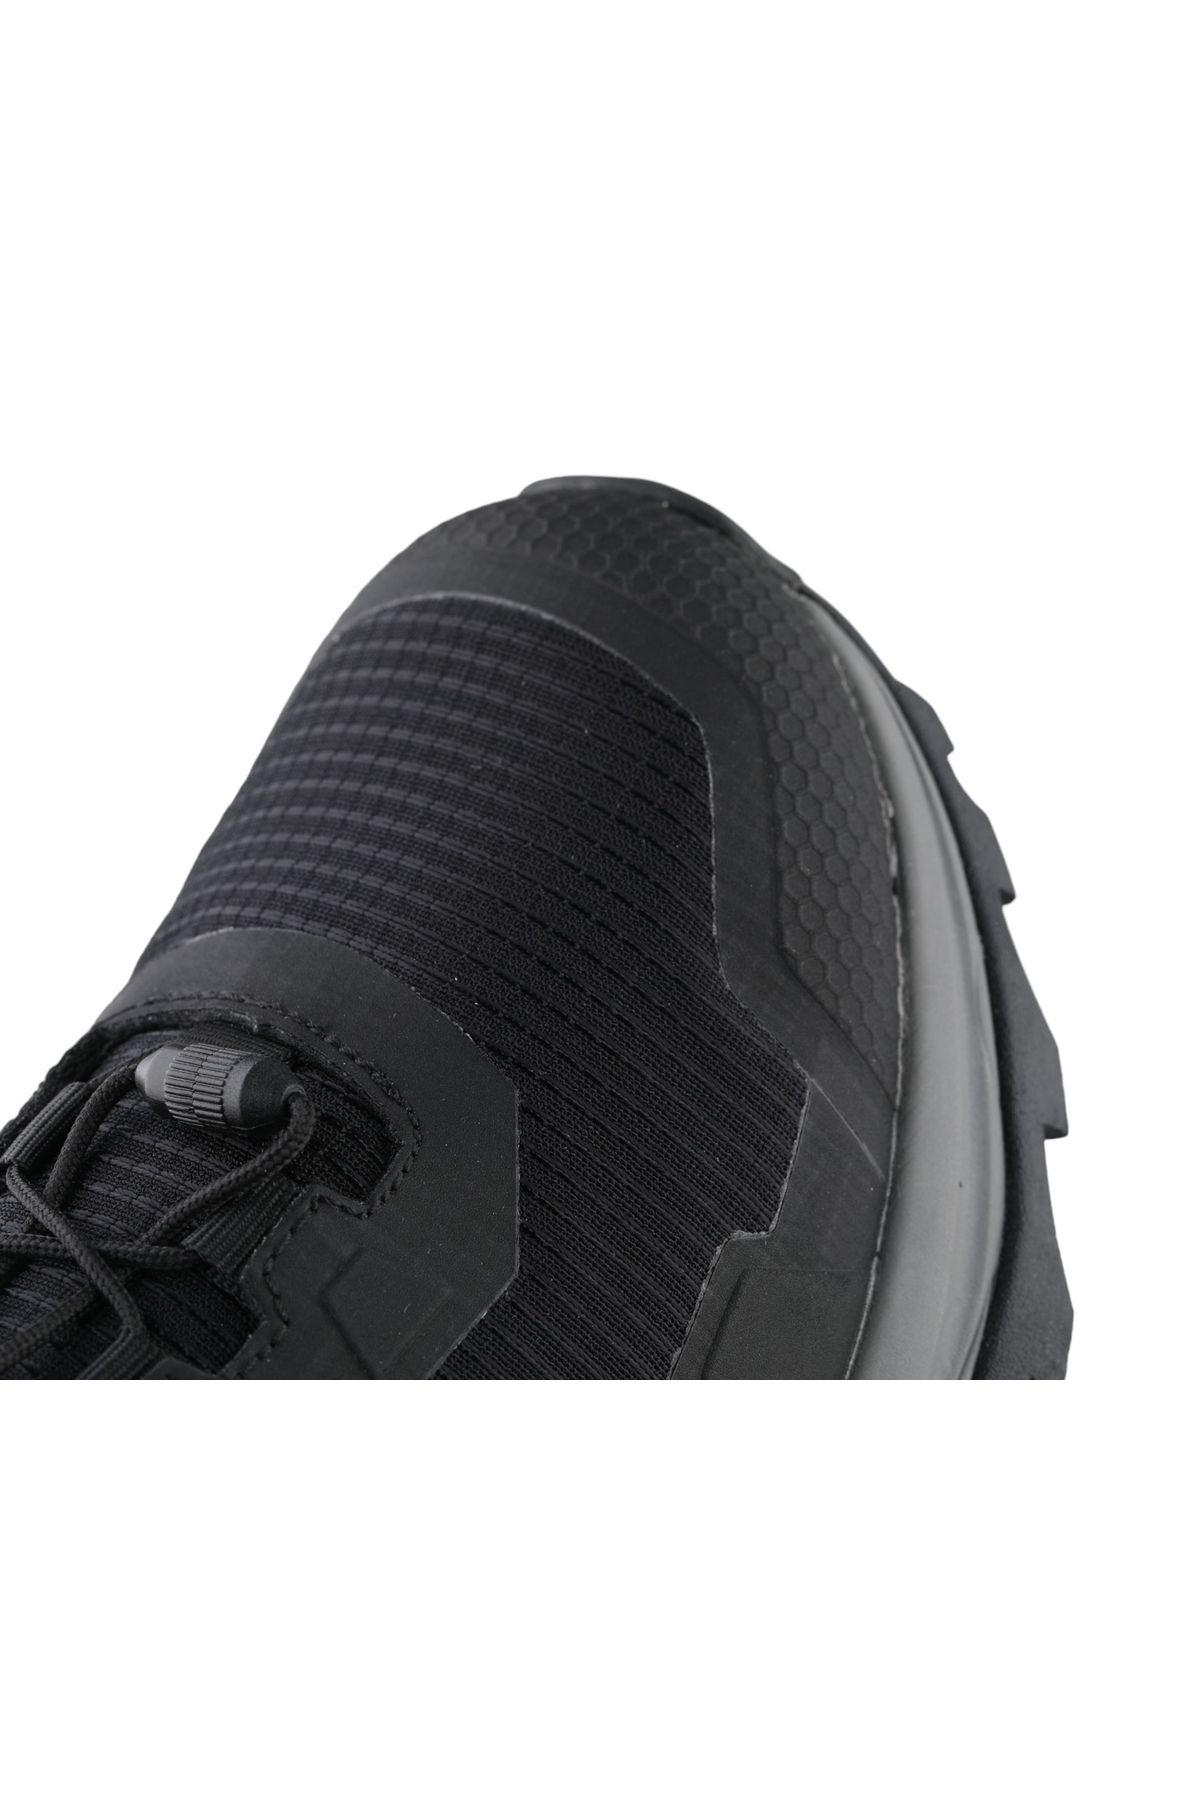 CAT 013M101106 Riesco Black Deri Tekstil Erkek Outdoor Ayakkabısı Siyah